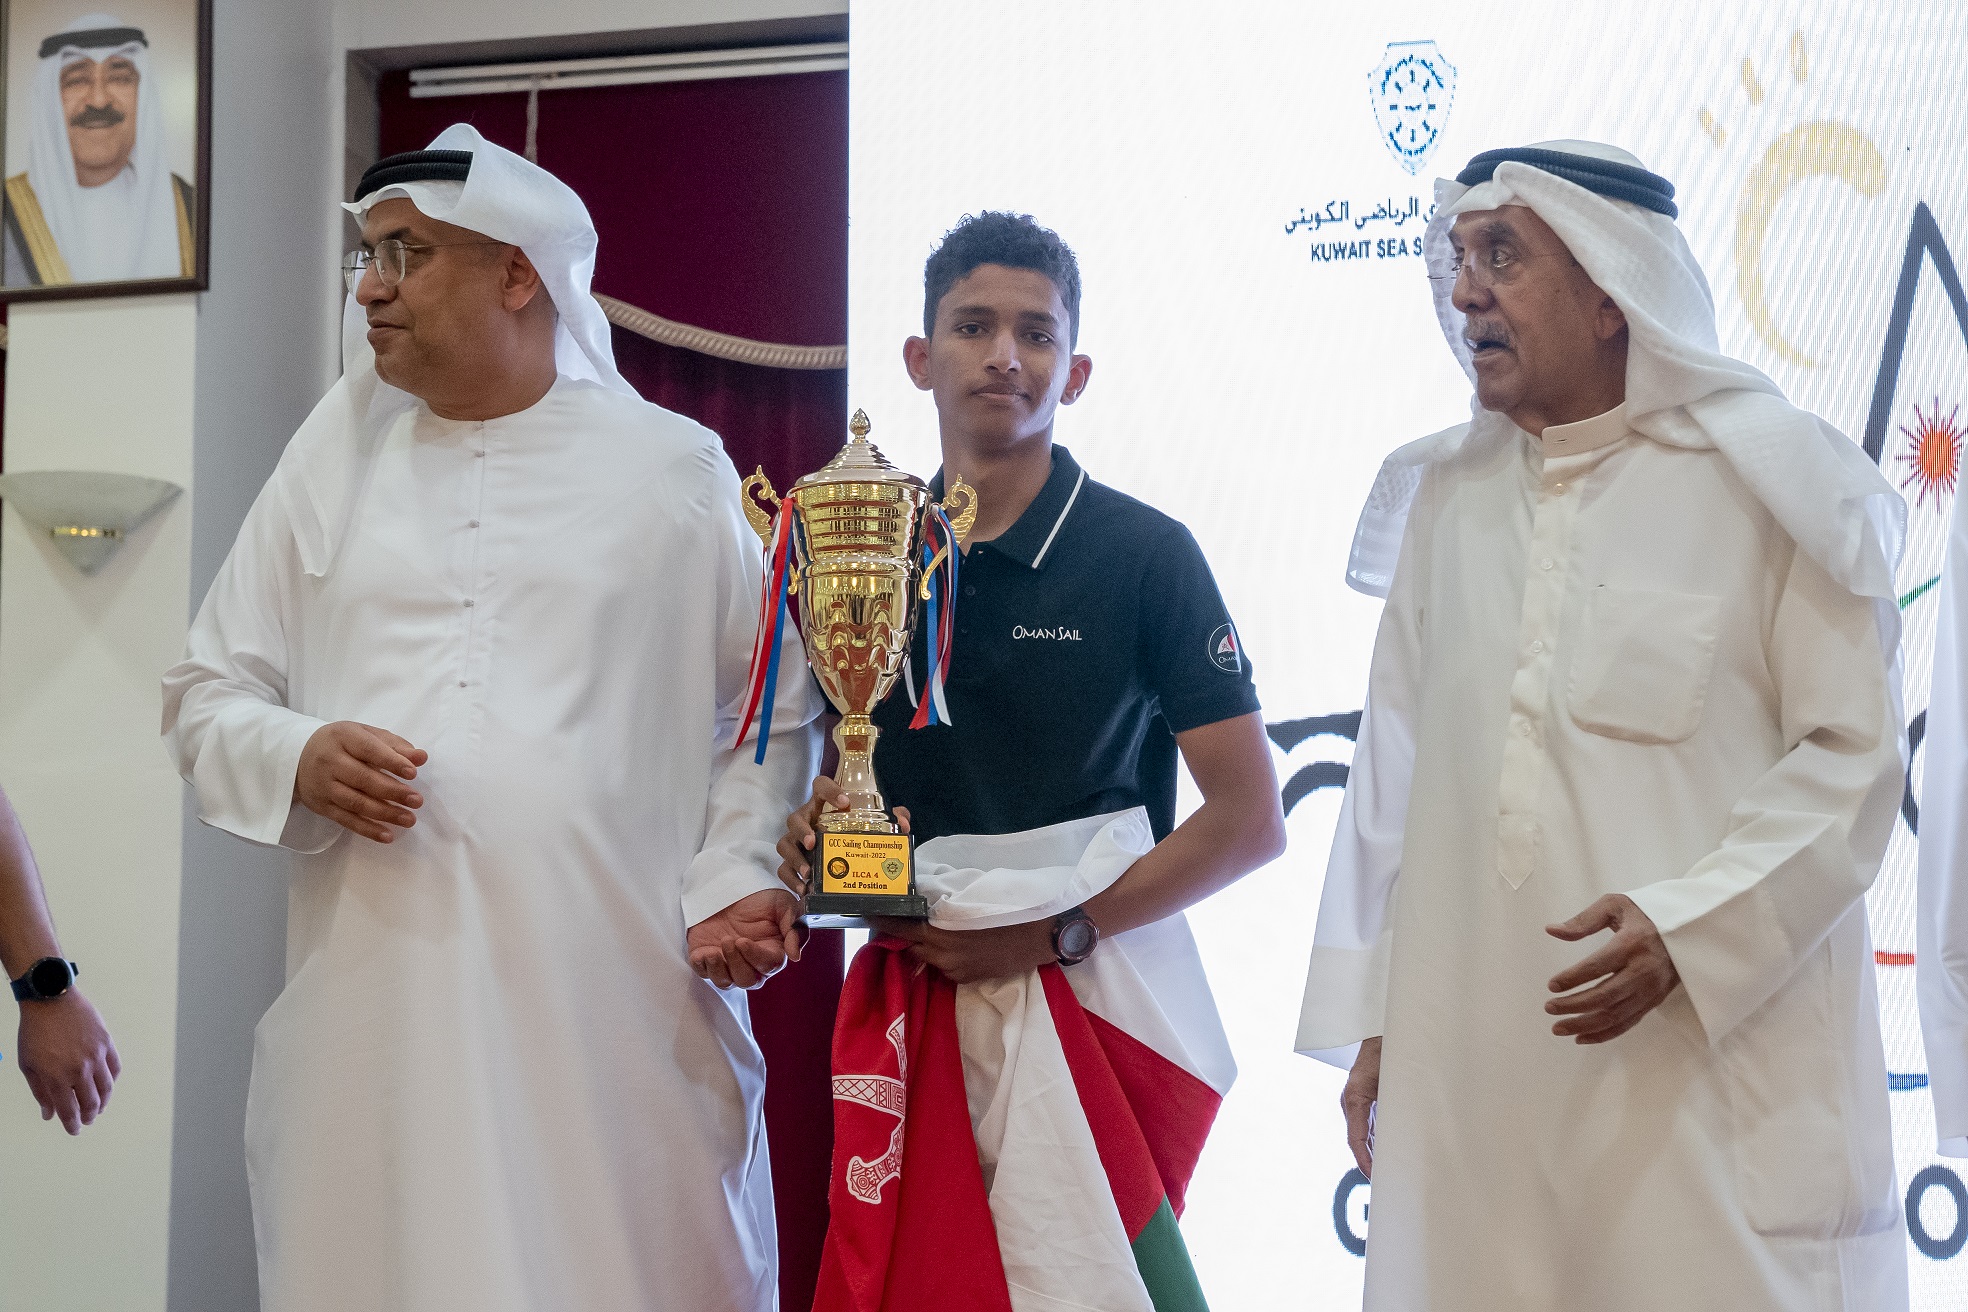 فريقنا يحصد غلّة من الميداليات في البطولة الخليجية للشراع بالكويت